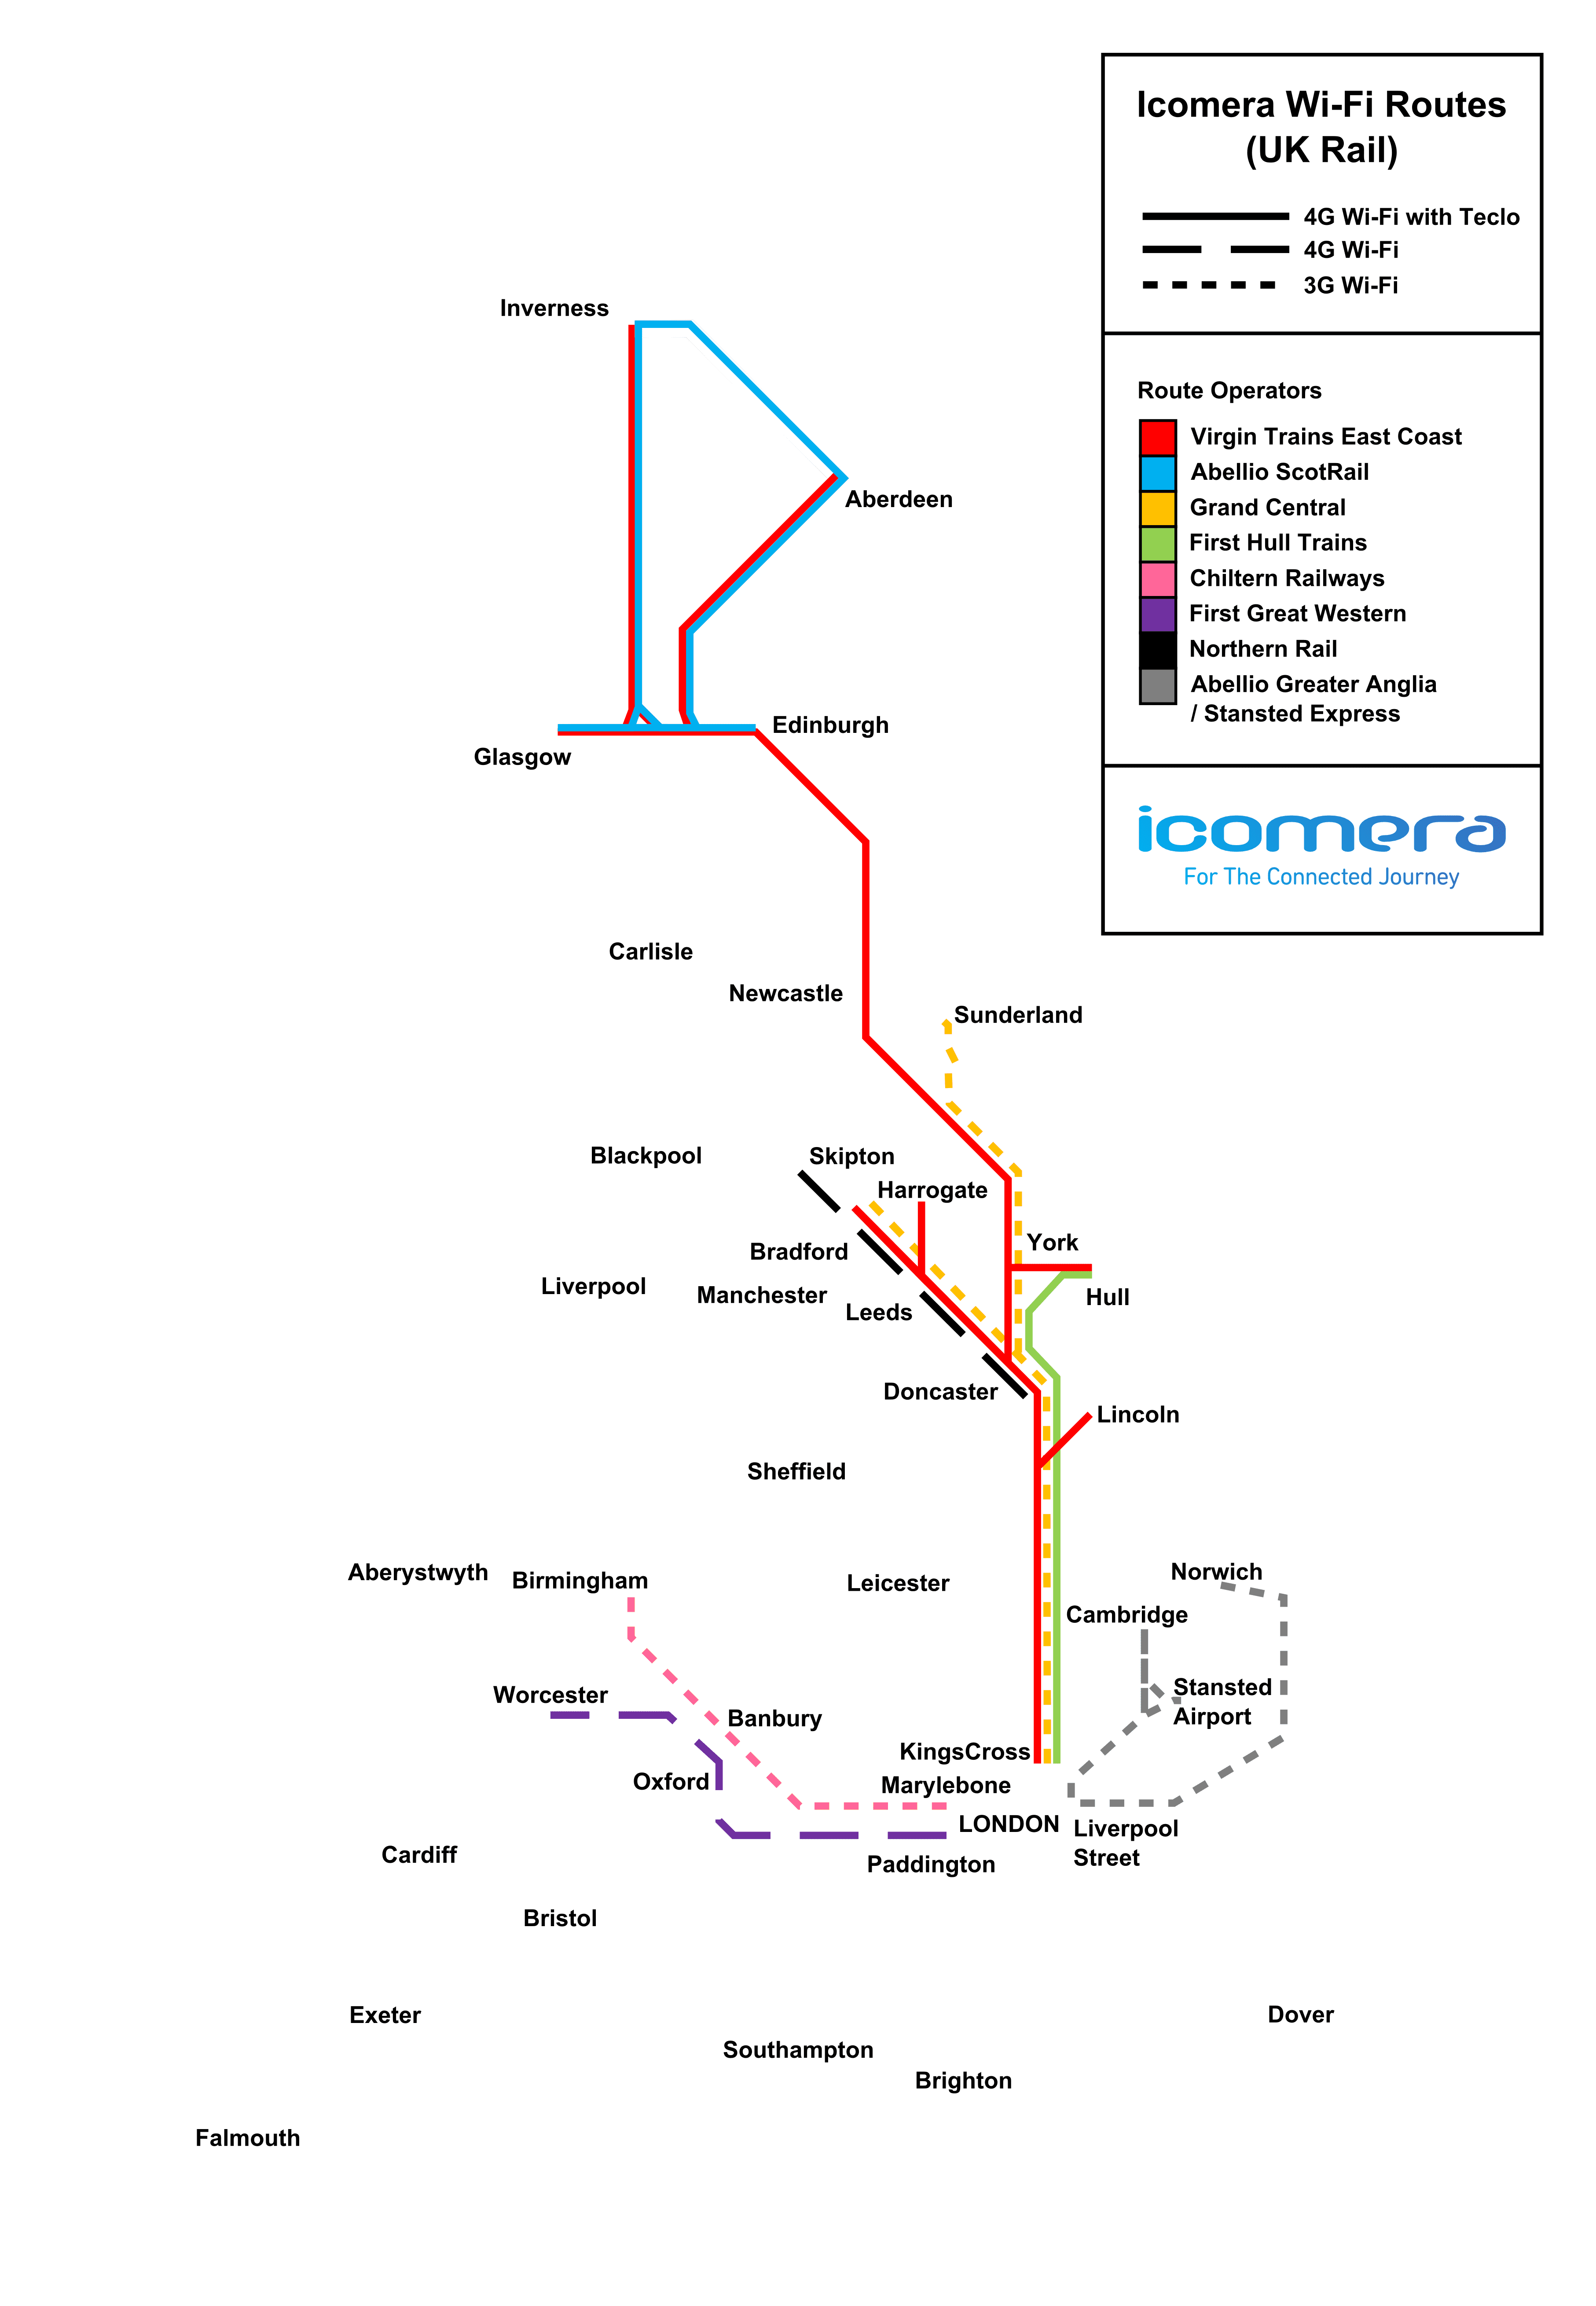 Icomera_UK_Rail_Wi-Fi_Map